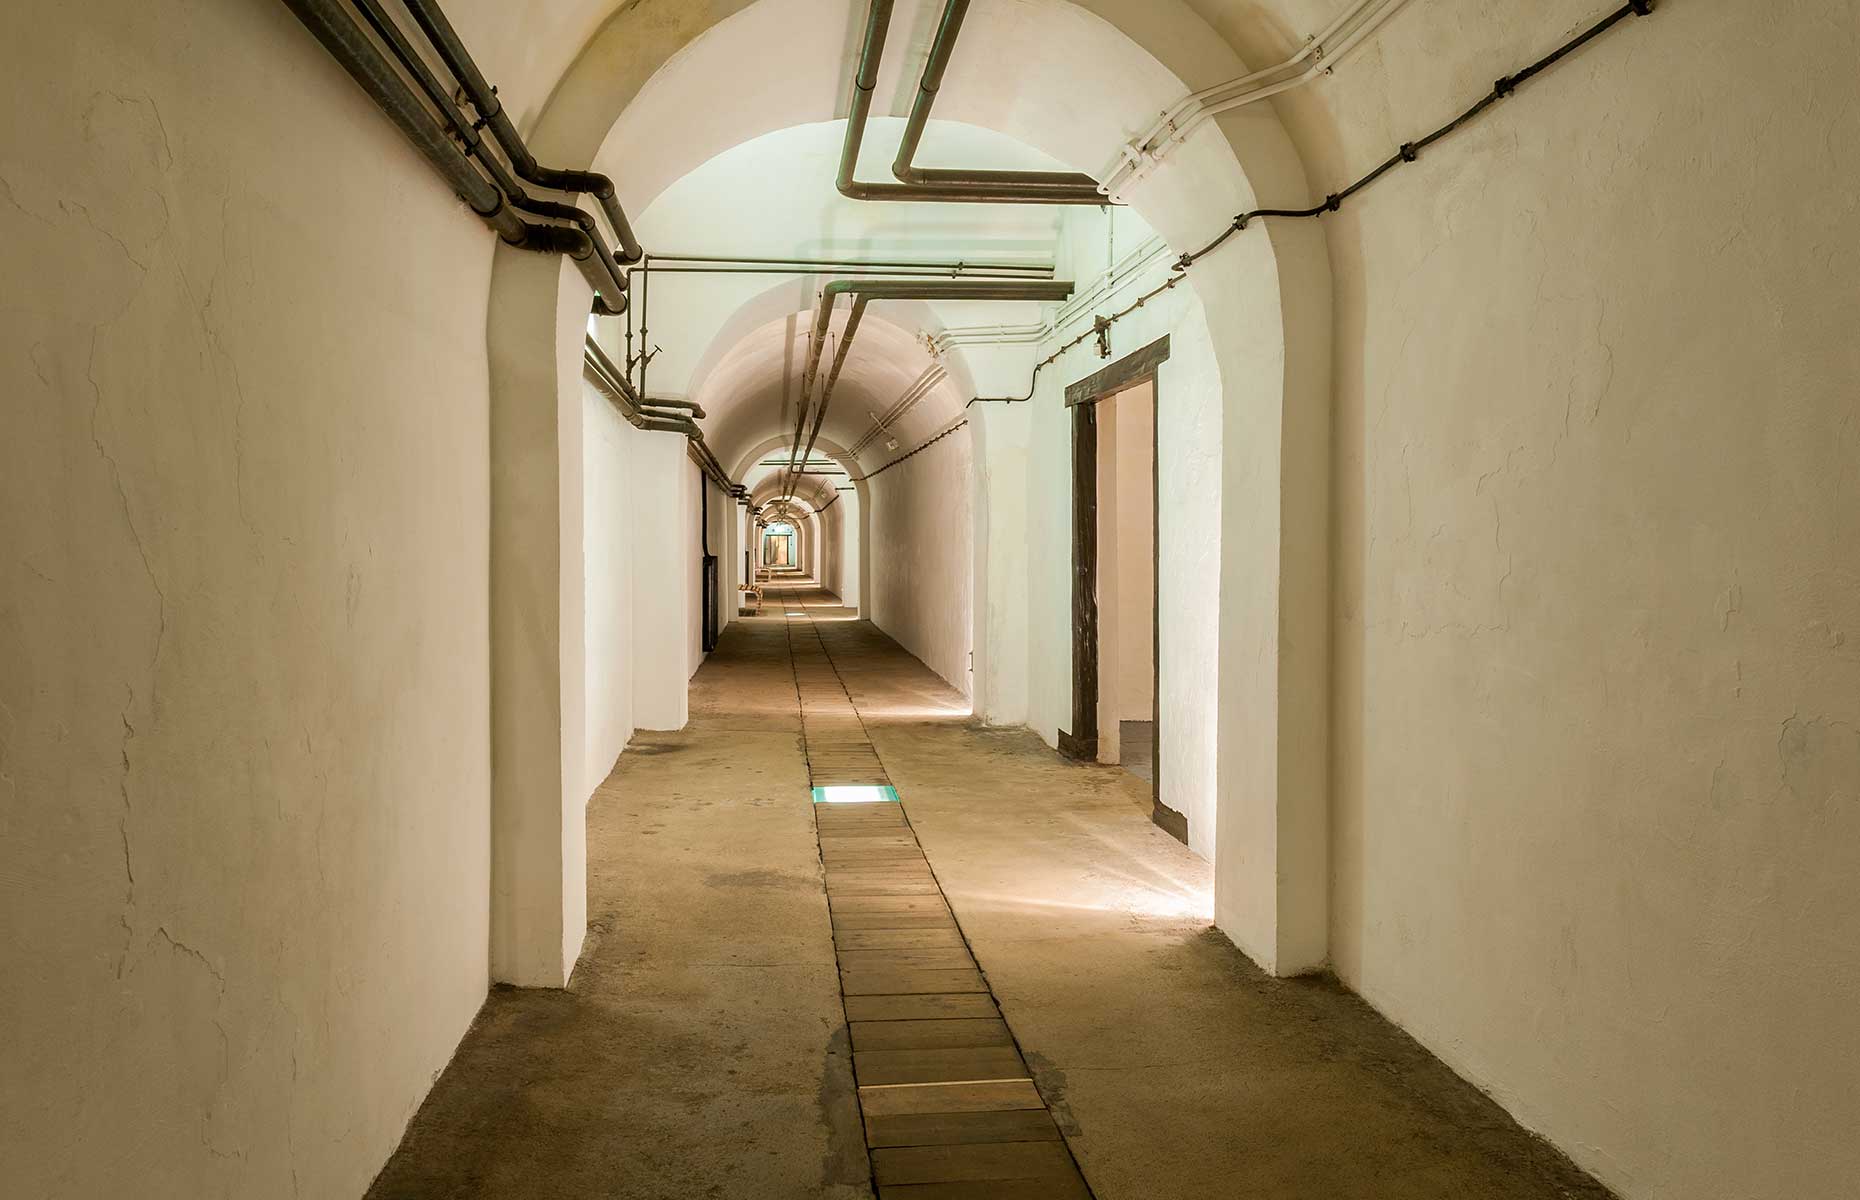 Jersey War Tunnels (Image: Allard One/Shutterstock)